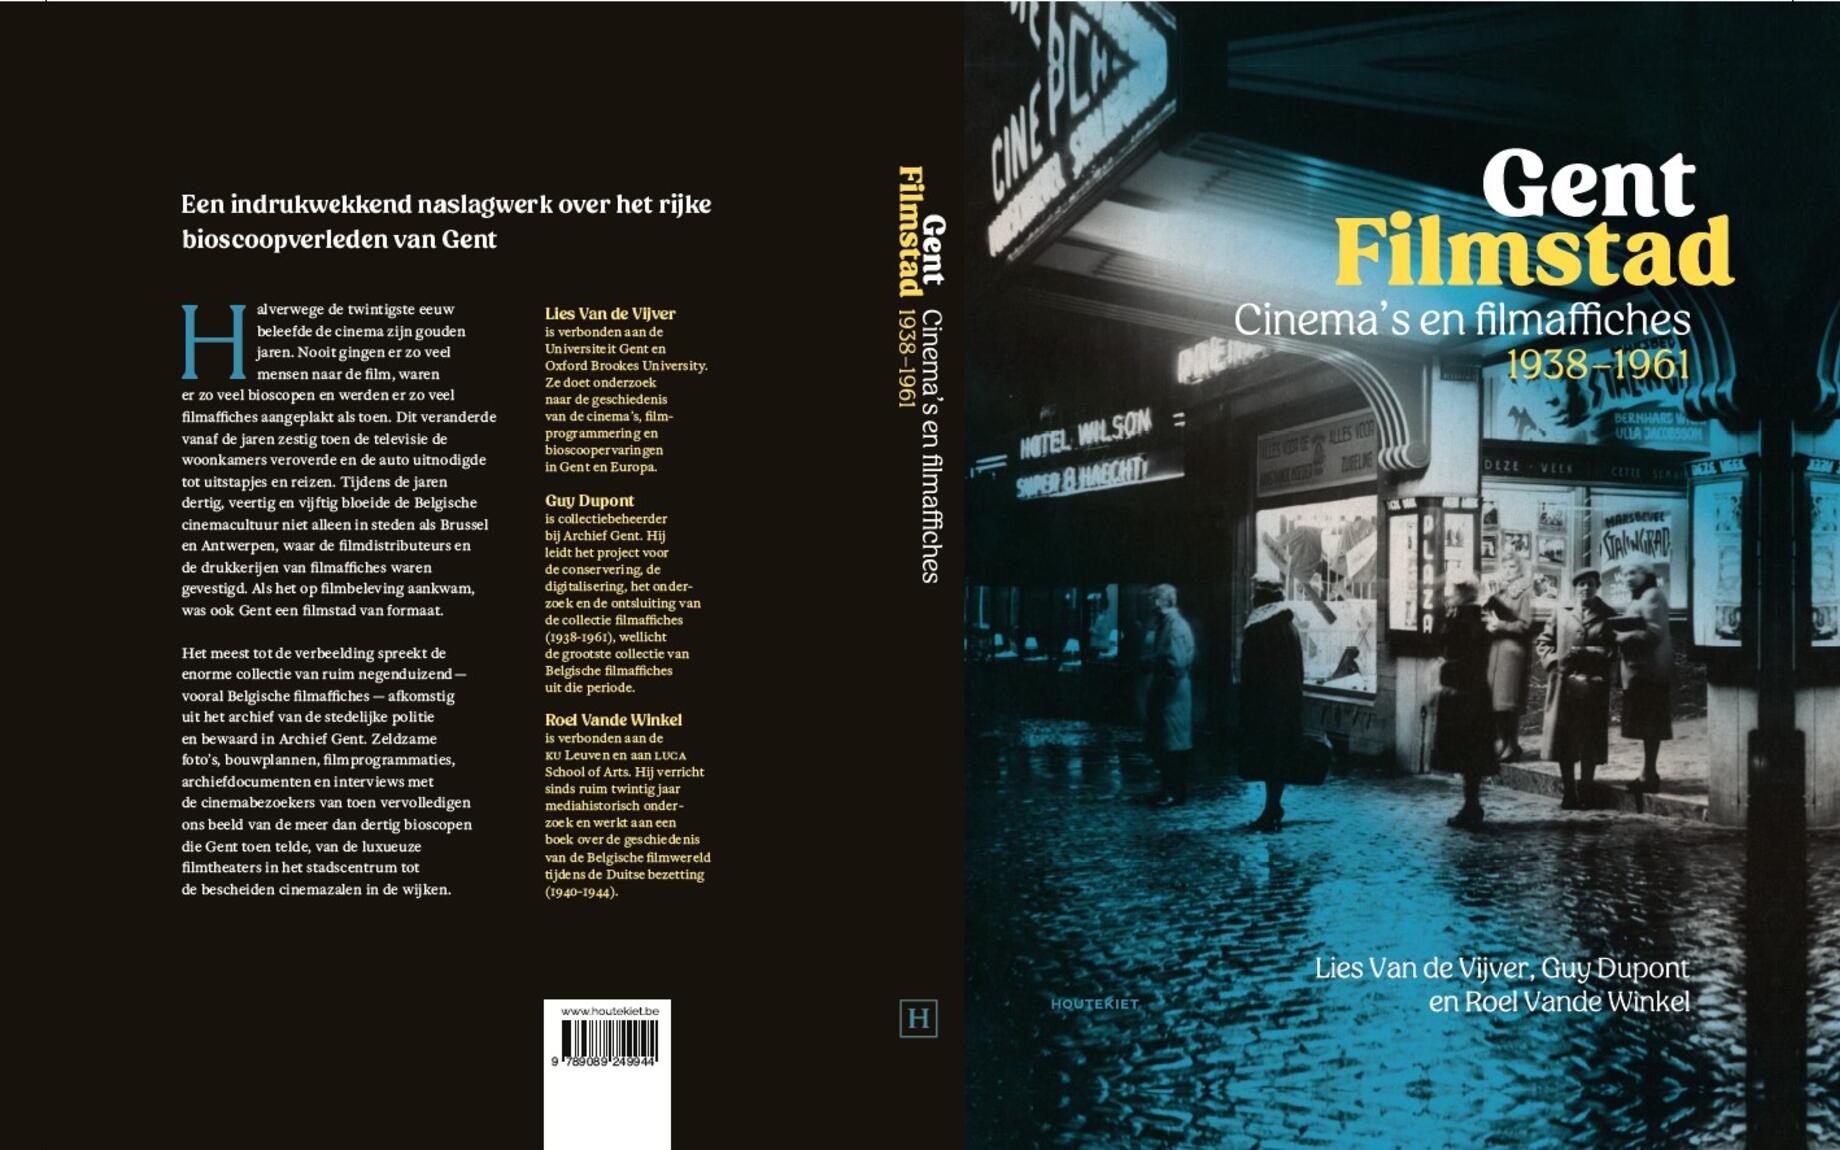 cover boek "Gent Filmstad"